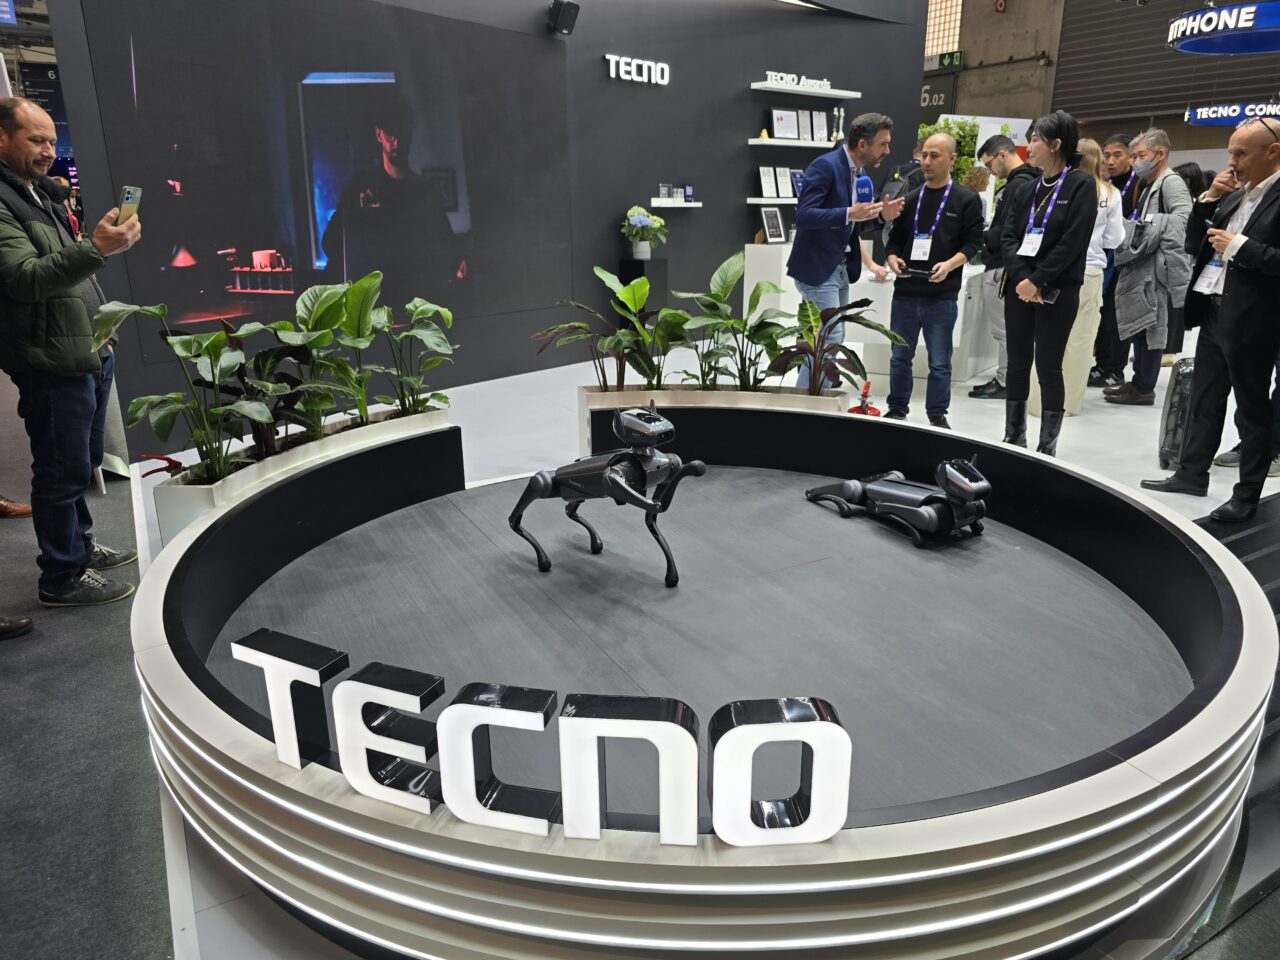 Robopies Tecno Dynamic 1. Stoisko firmy Techno z robotami czworonożnymi i grupą osób uczestniczących w pokazie technologicznym.